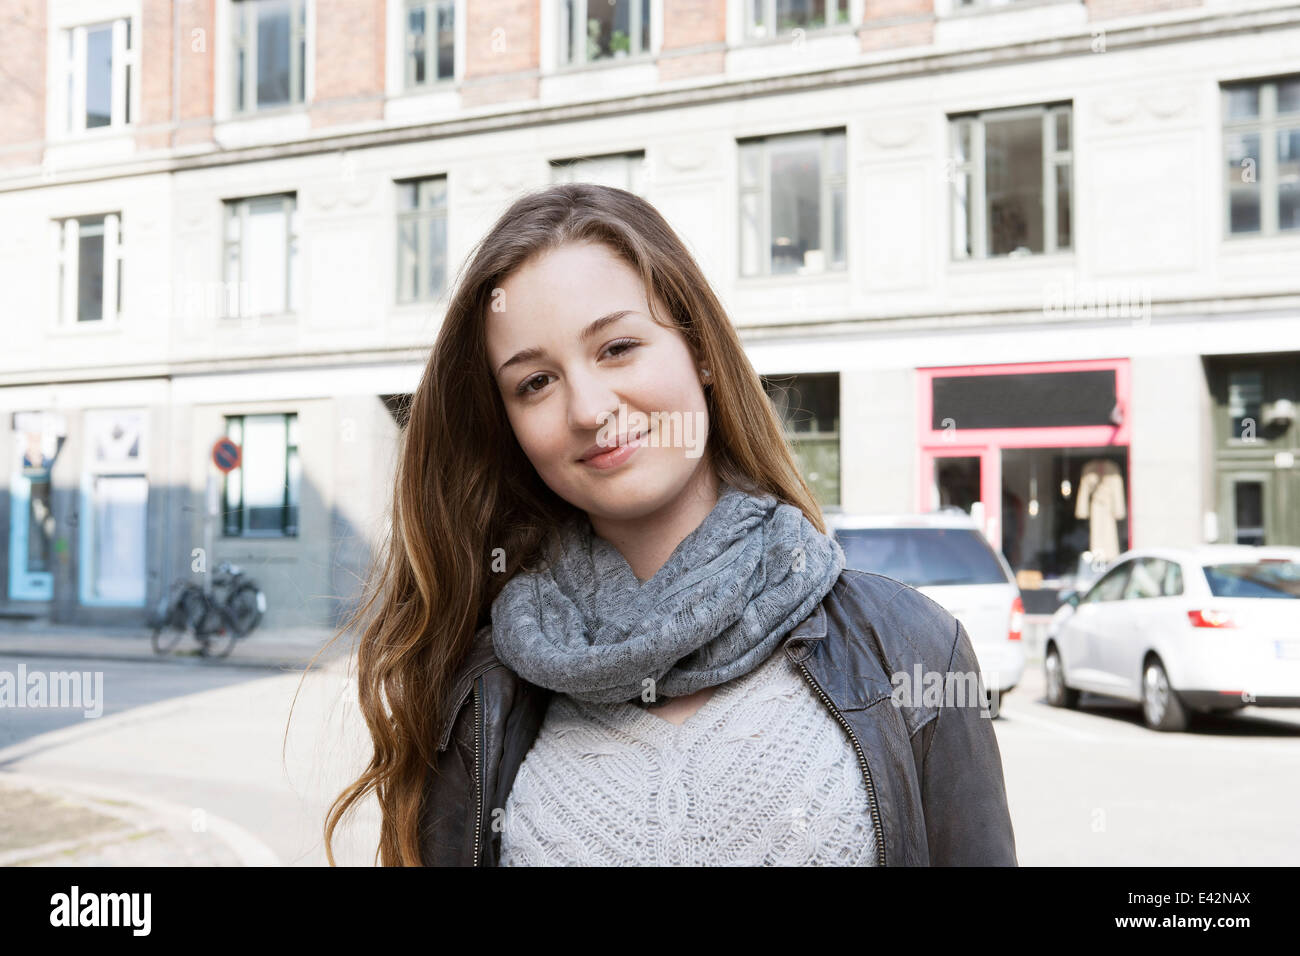 Retrato de una adolescente en las calles de la ciudad Foto de stock